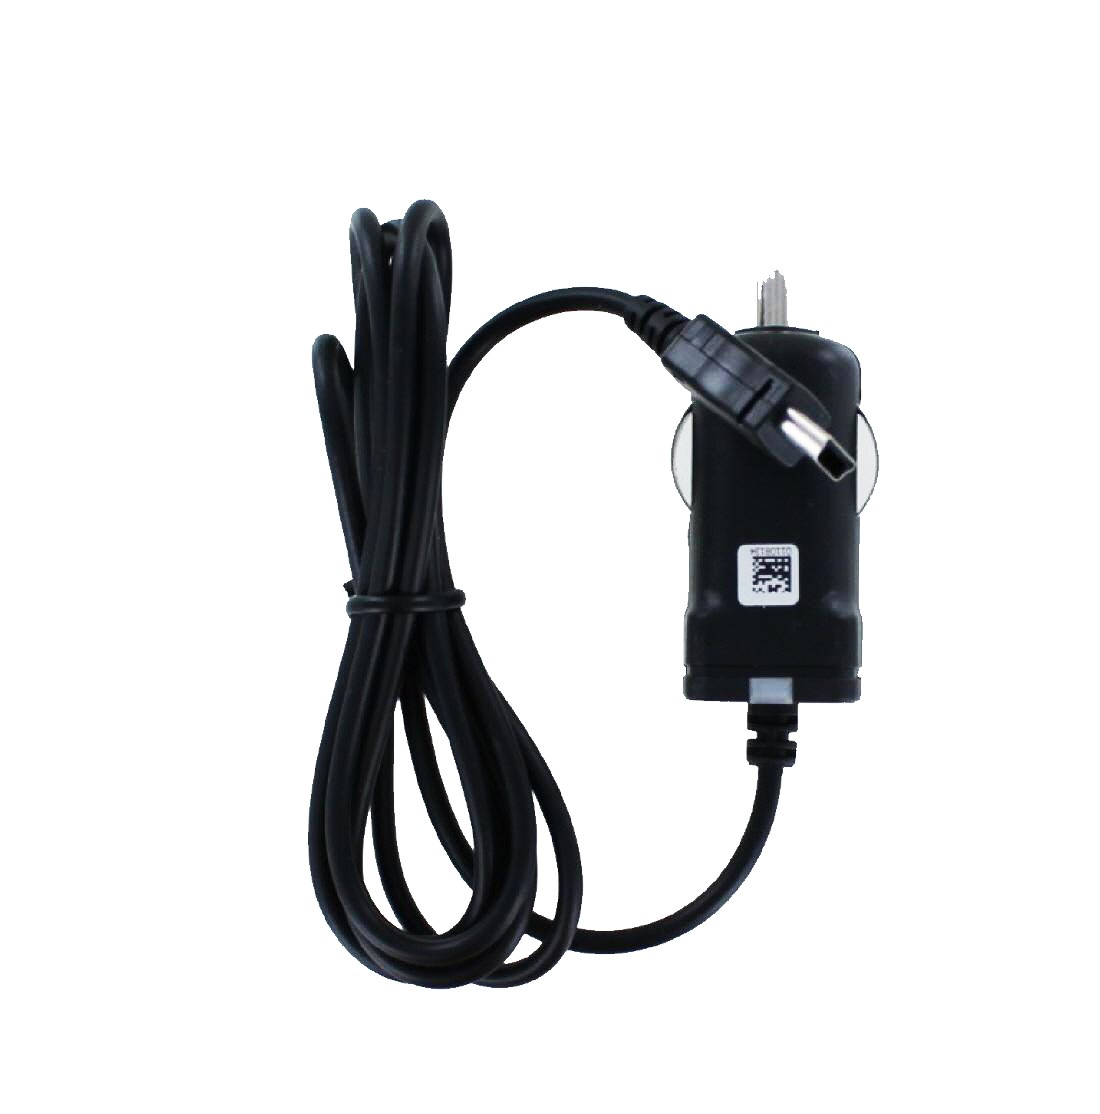 MOBILOTEC Ladekabel kompatibel 2597LMT mit 5 nüvi Volt, Garmin schwarz Garmin, Netzteil/Ladegerät